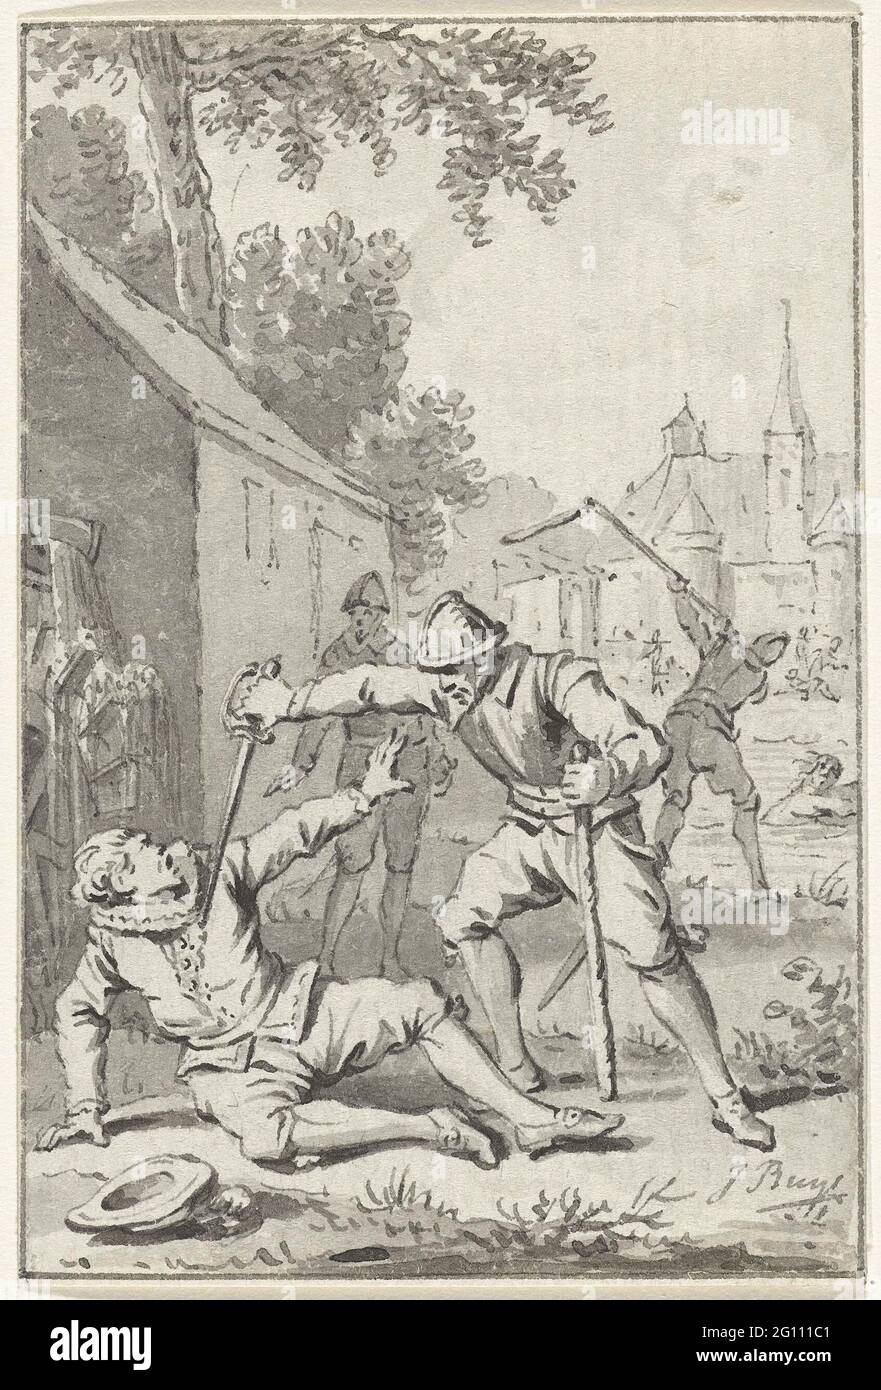 Mord an Wirich von Daun, Graf von Falkenstein, 1598. Der Mord an dem Wirich von Daun, Graf von Falkenstein, durch die spanischen Truppen unter Francisco de Mendoza, wurde am 11. Oktober 1598 begangen. Design für einen Druck. Stockfoto